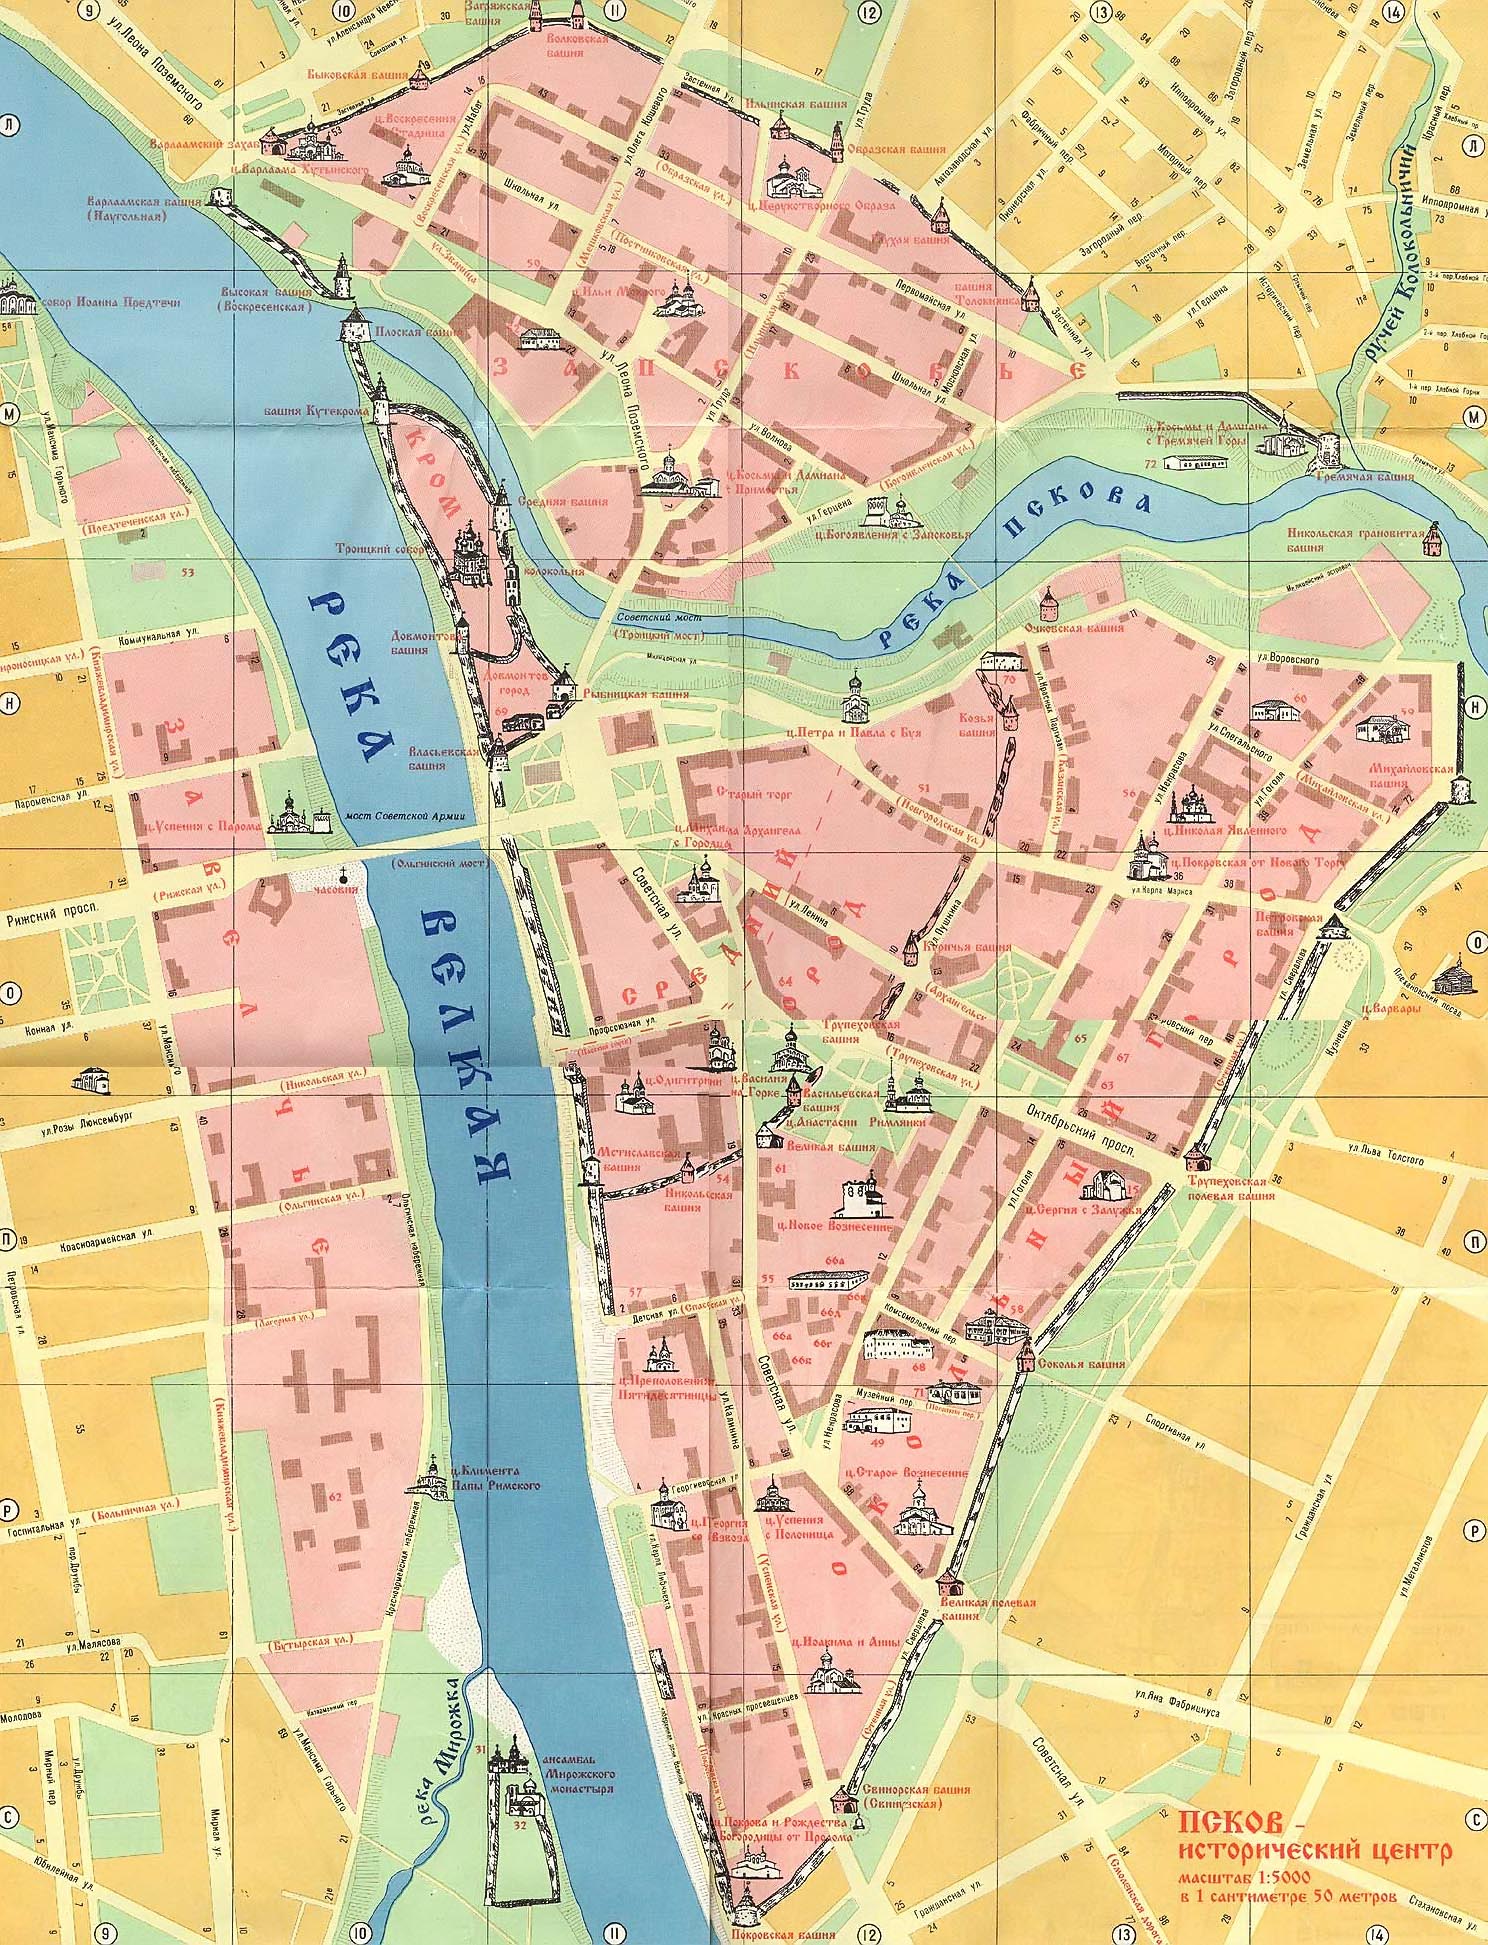 Интерактивная карта архитектурных памятников Пскова